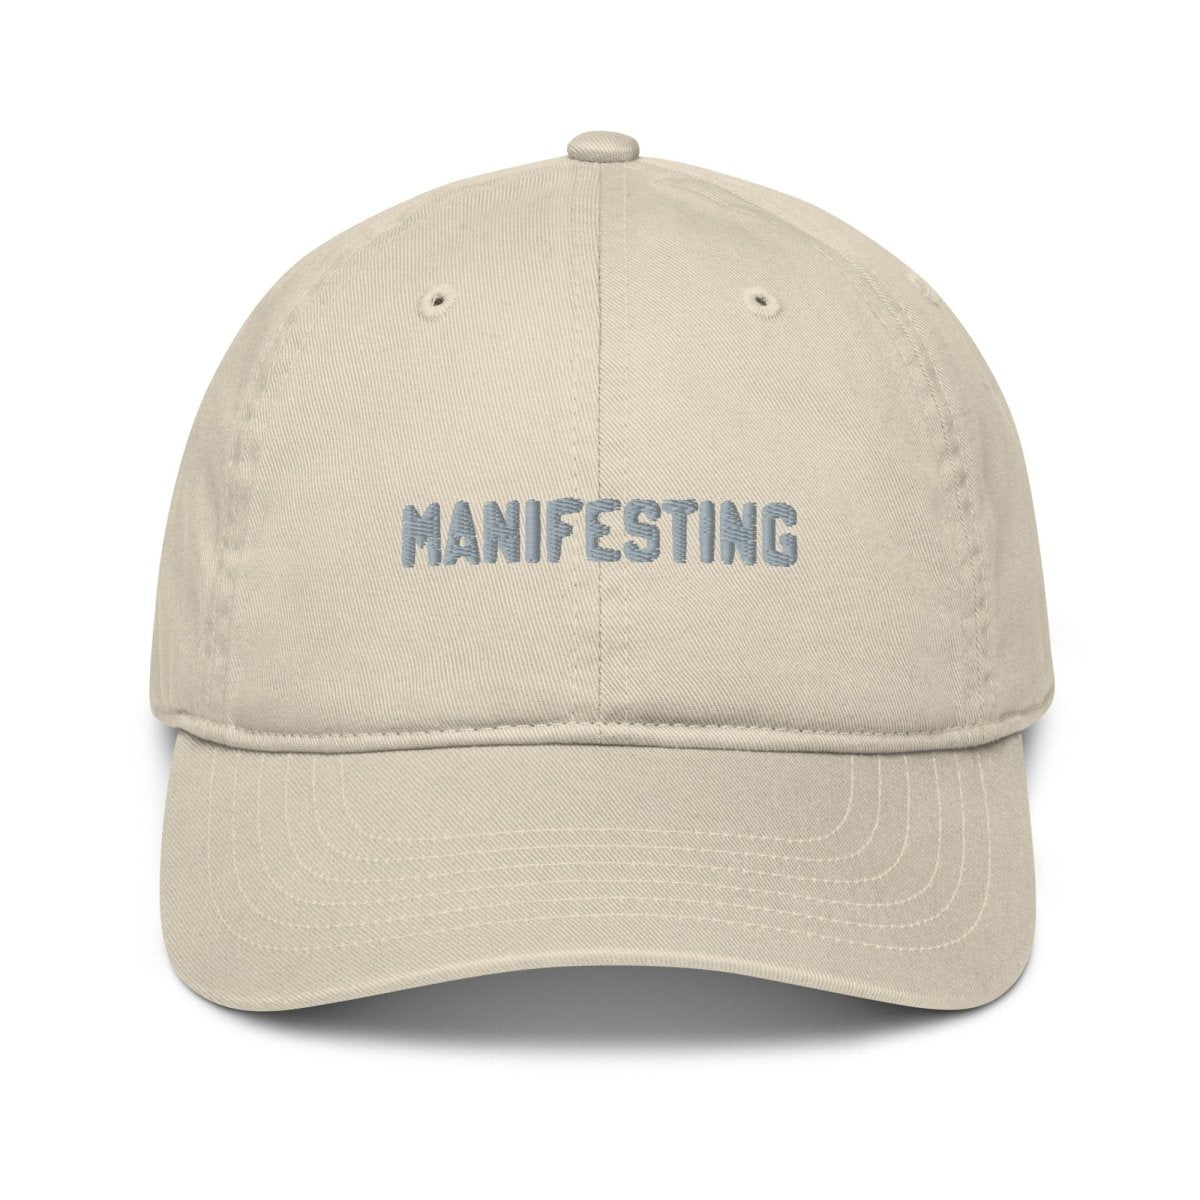 Manifesting Organic Low Profile Dad Hat - Cotton Plus Cream